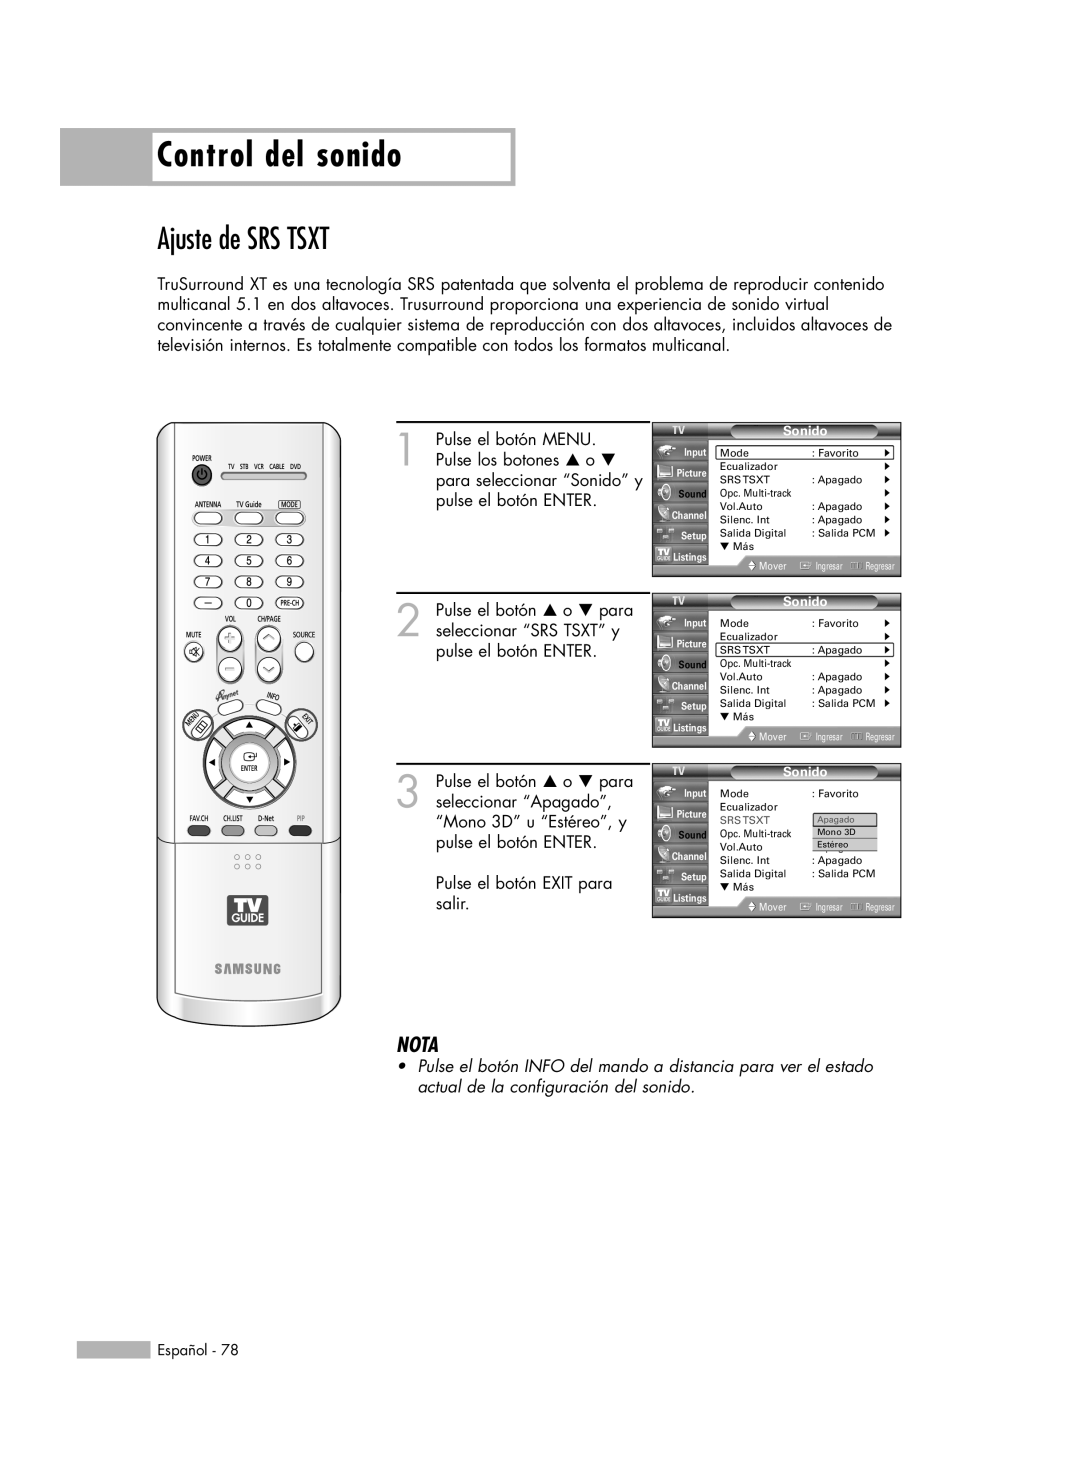 Samsung HL-R5678W, HL-R6178W, HL-R5078W, HL-R7178W manual Ajuste de SRS TSXT, Control del sonido, Nota 